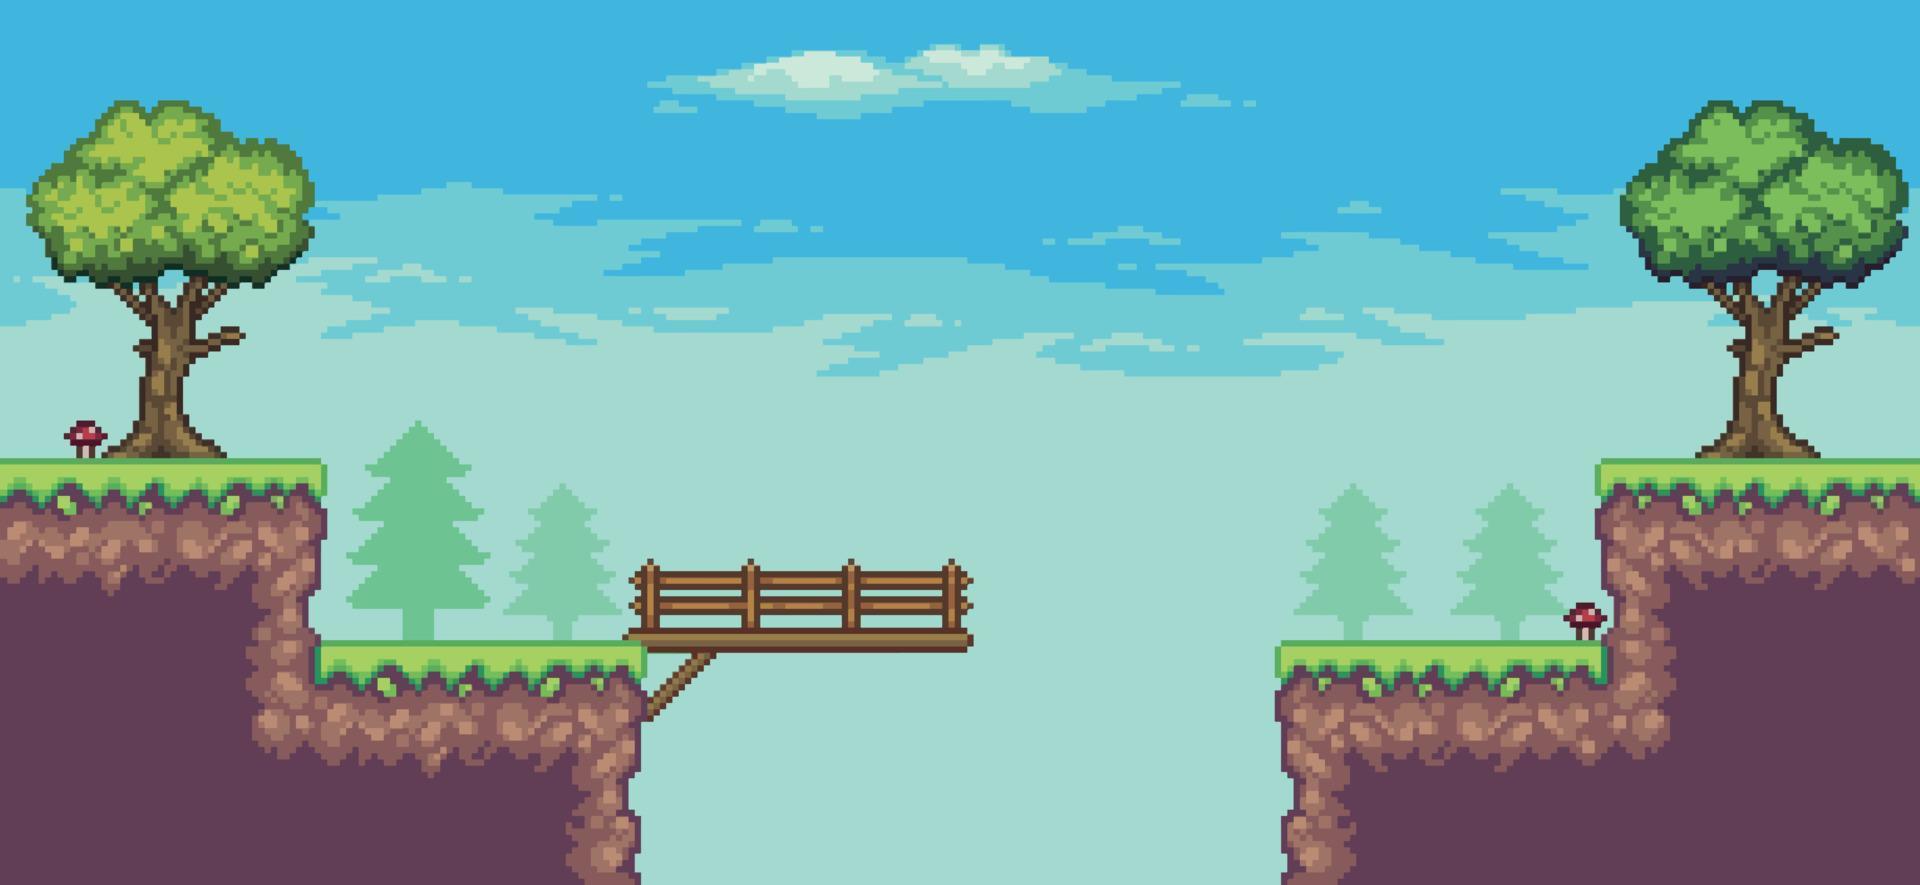 pixel kunst speelhal spel tafereel met boom, brug, houten bord, en wolken 8 bit vector achtergrond